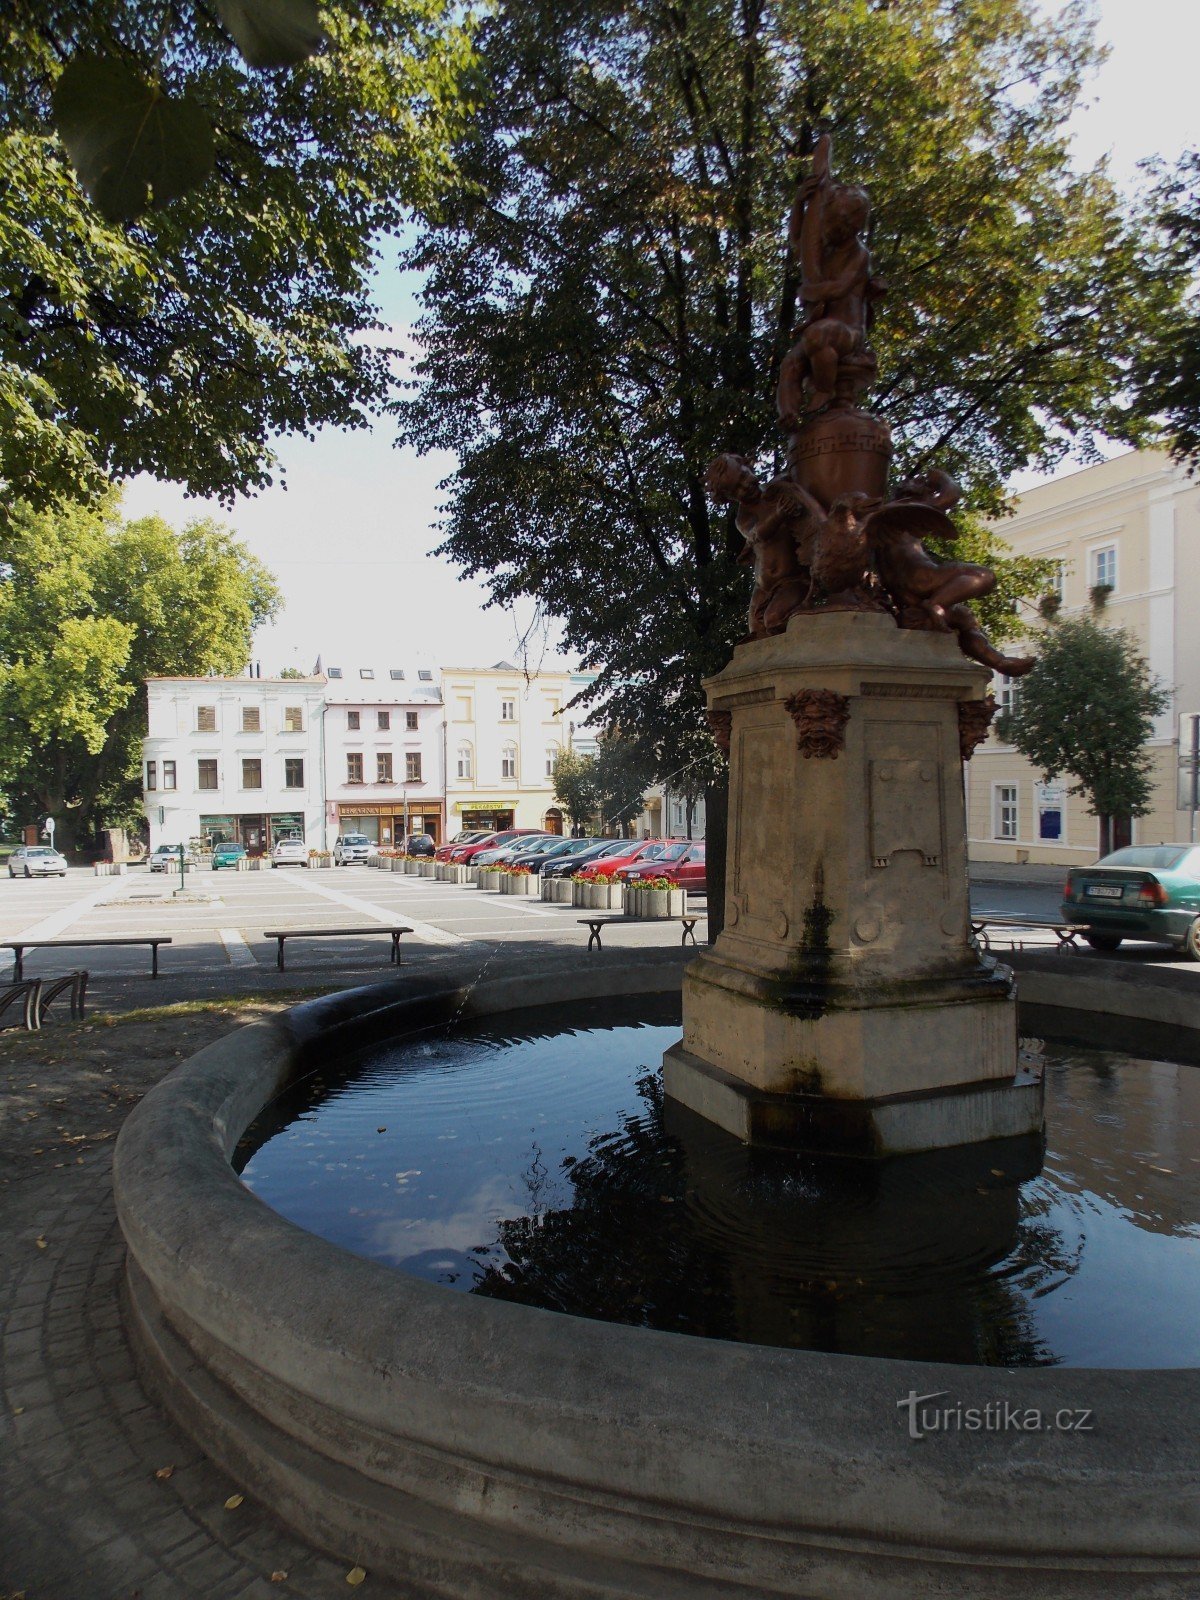 La fuente: la característica dominante de la plaza Masaryk en Odary